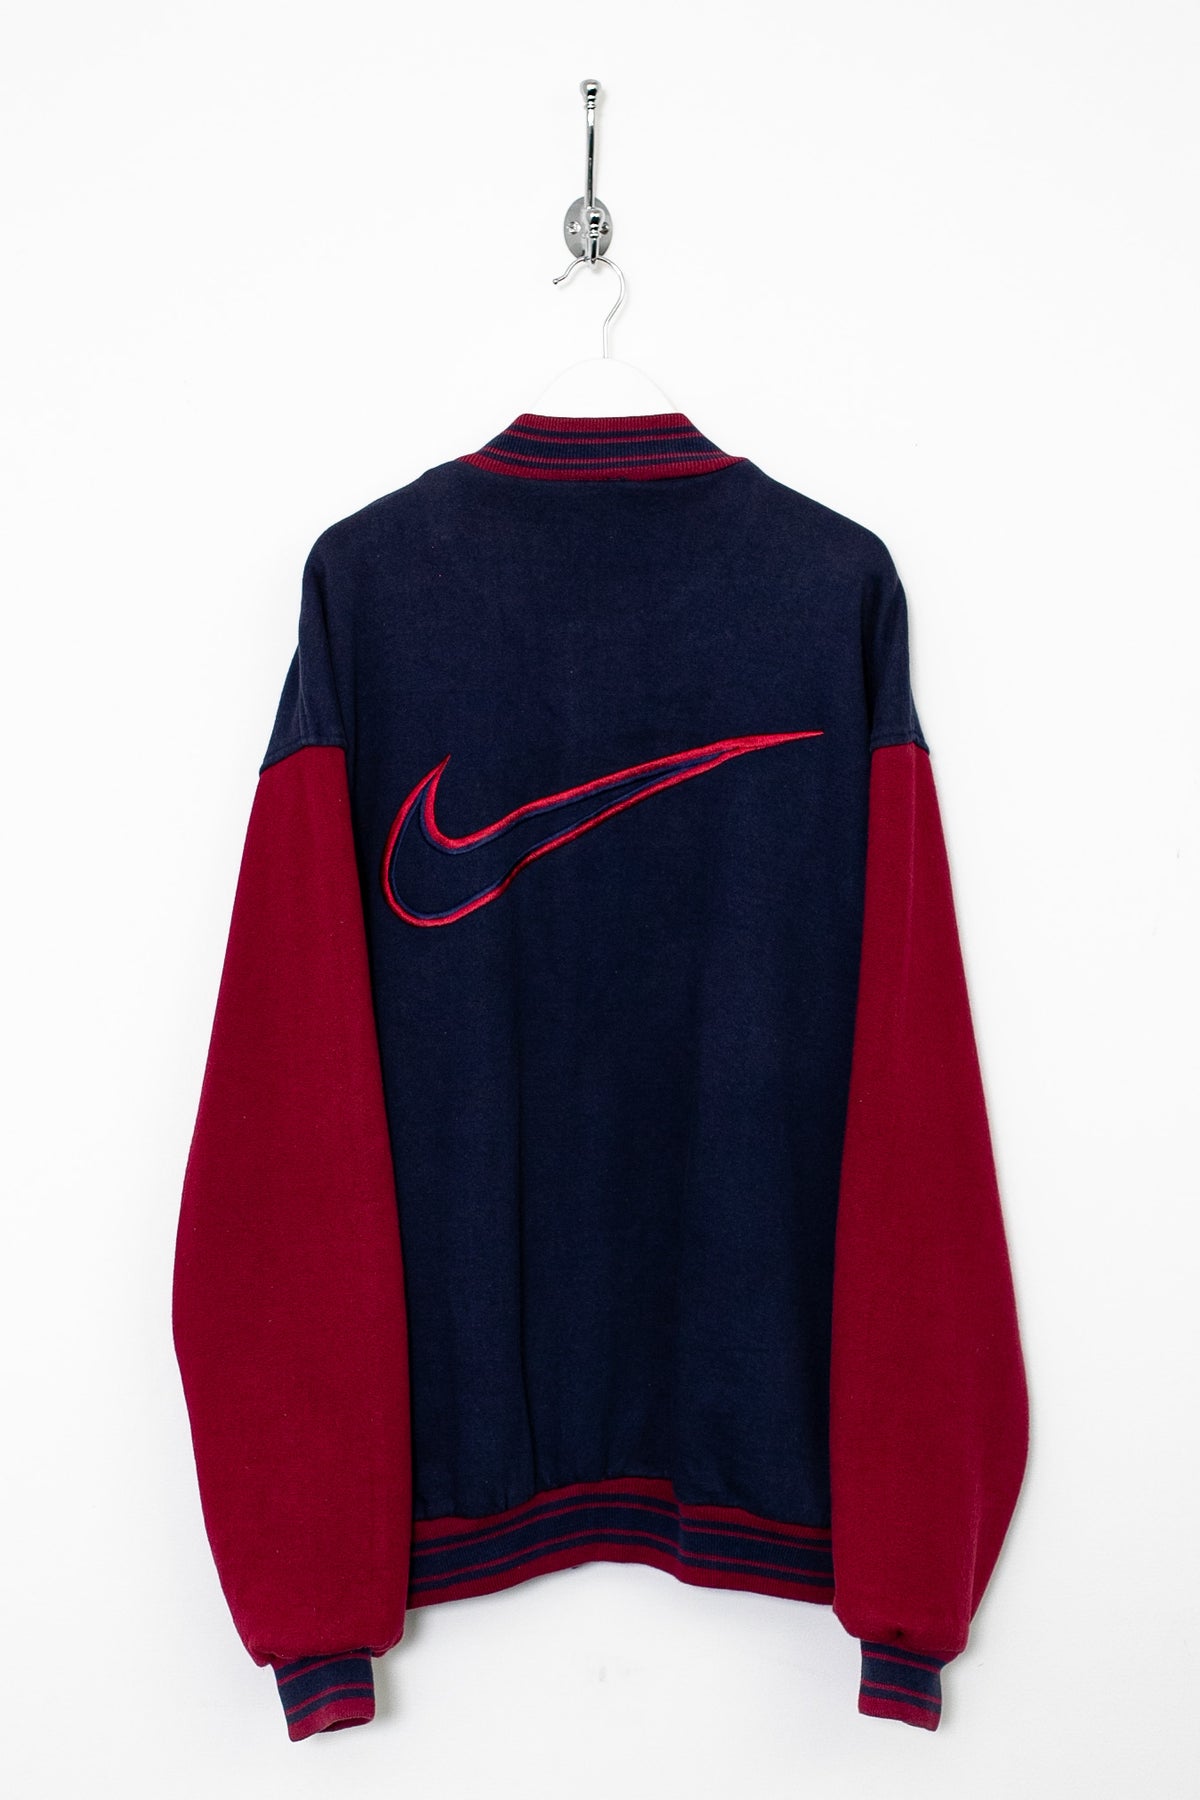 90s Nike Varsity Jacket (XL)